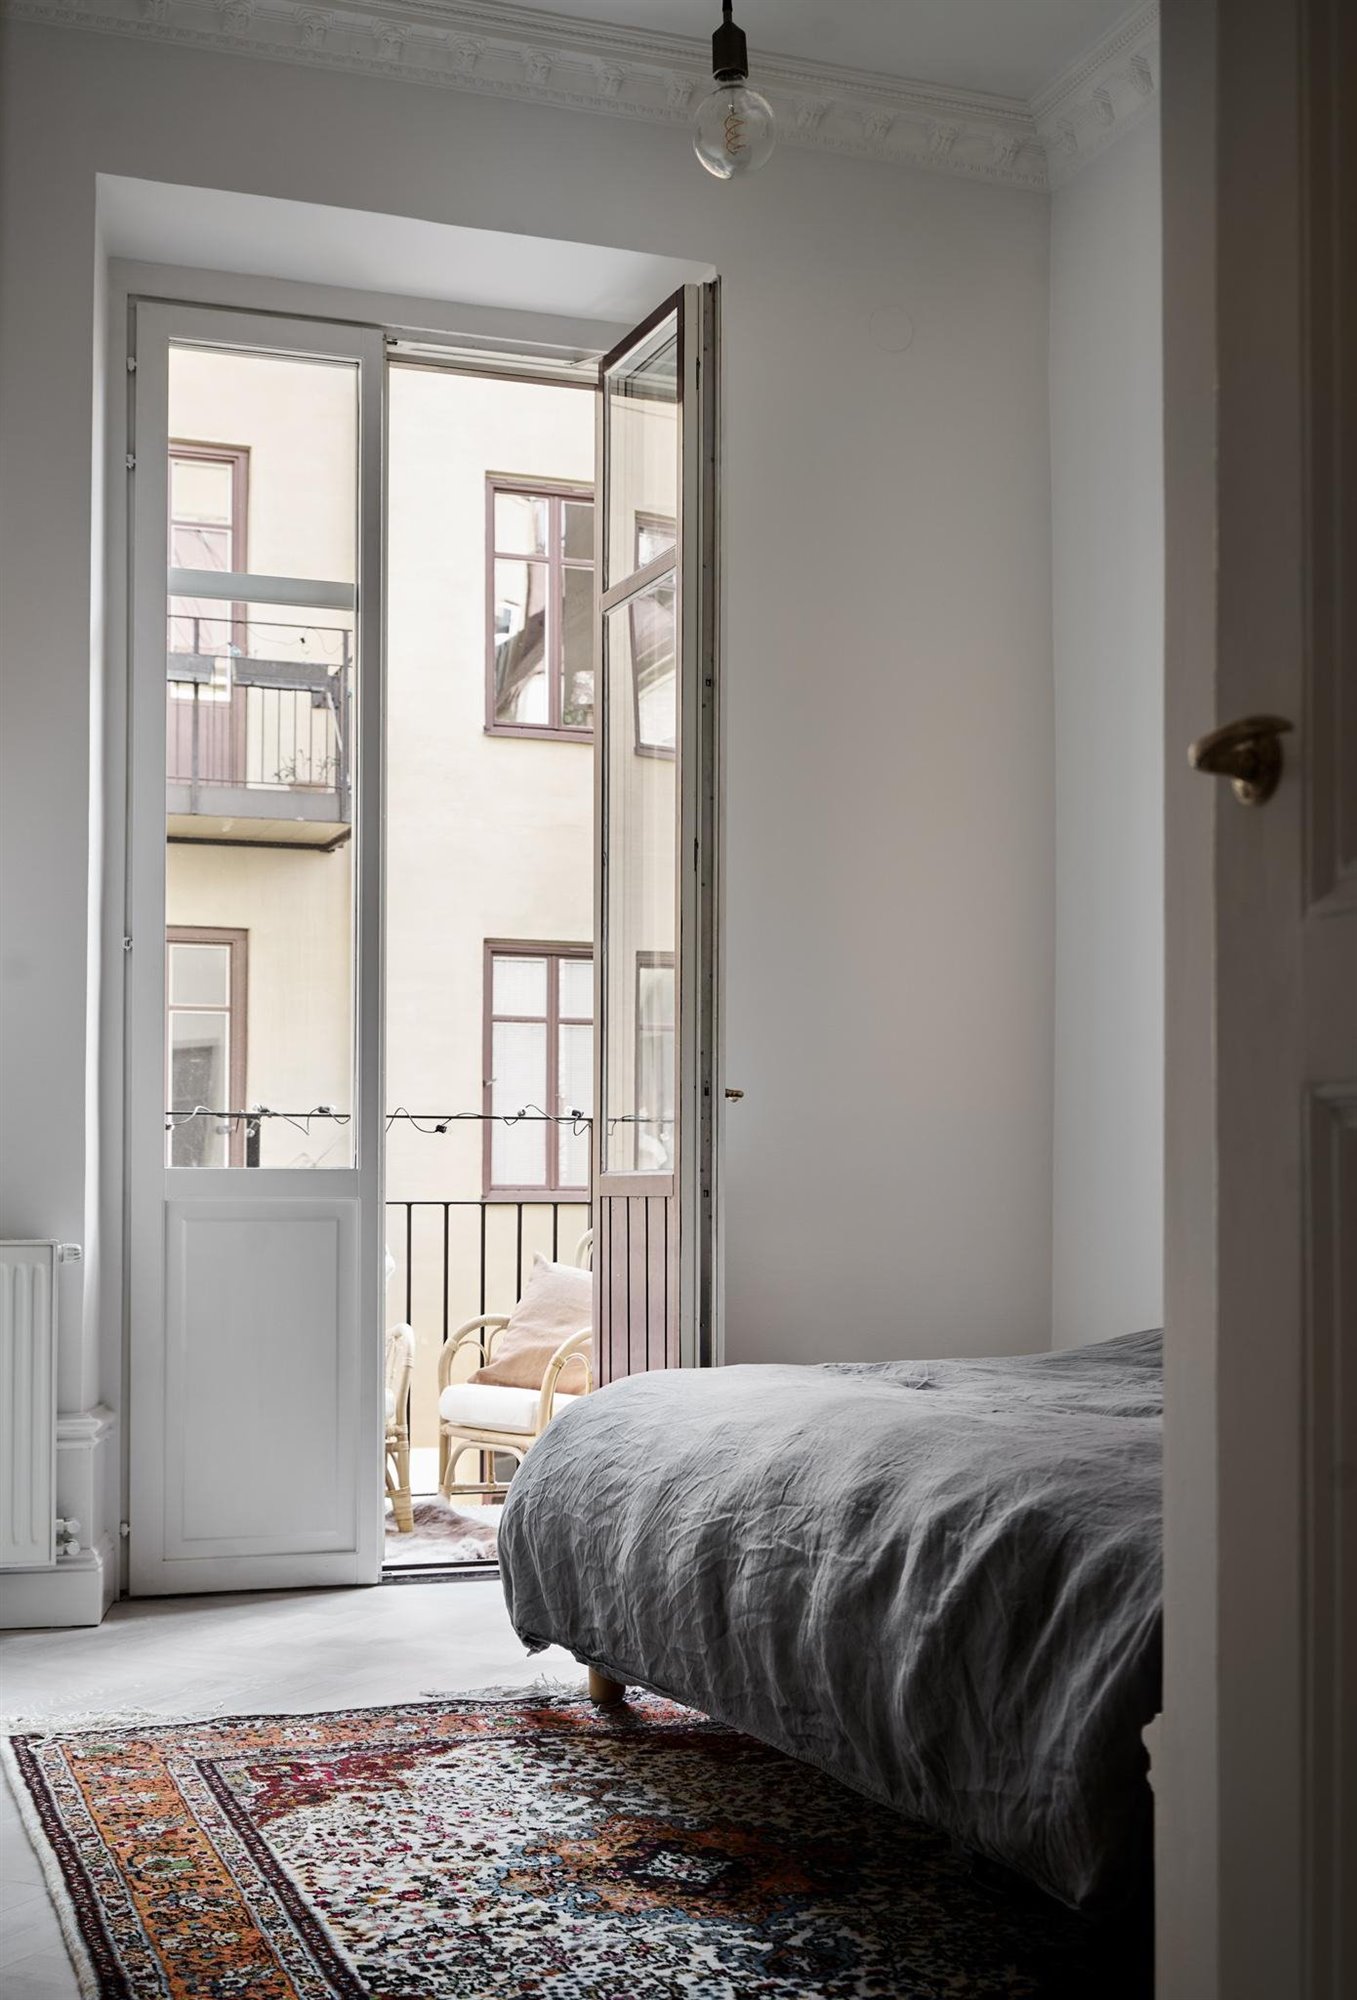 Piso con decoracion Nordica moderno con techos con molduras dormitorio